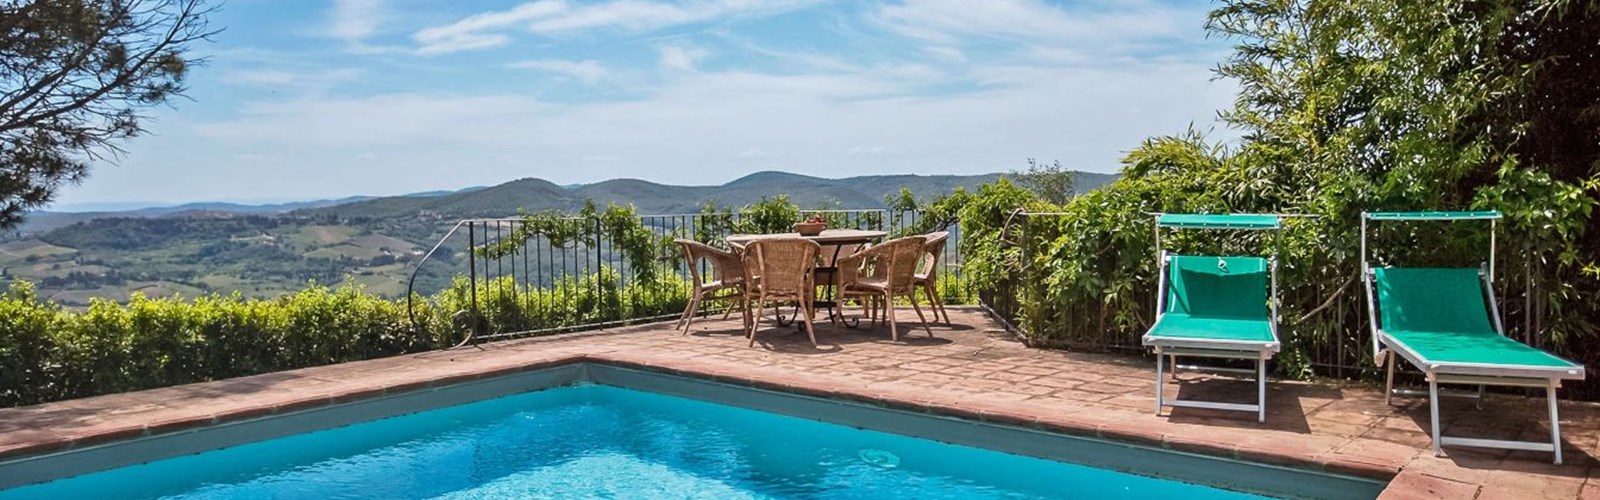 udsigt fra pool i Toscana